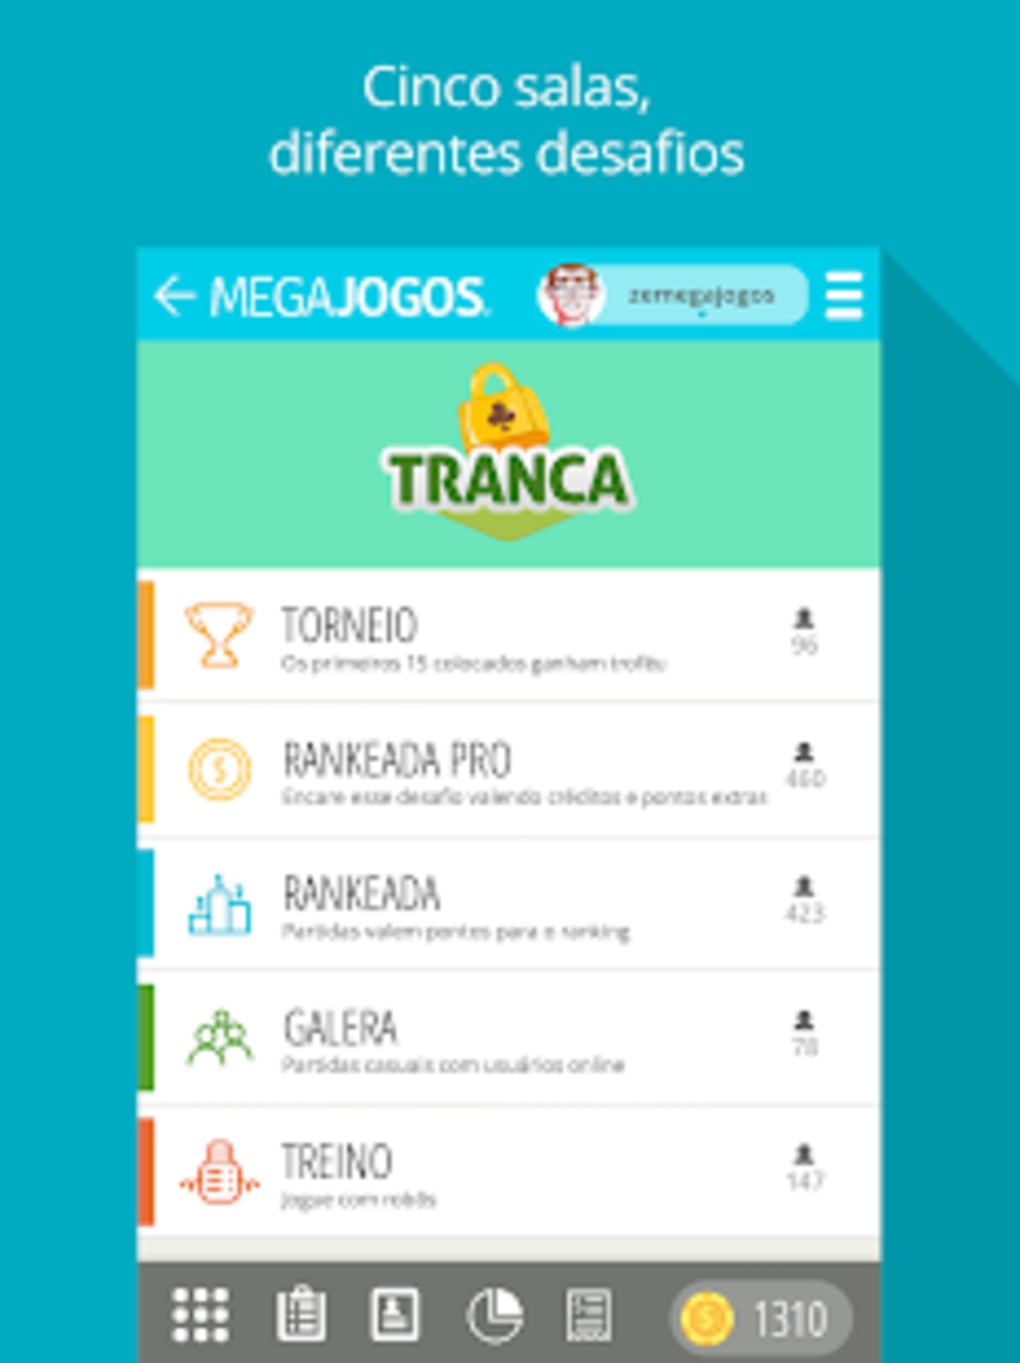 Download Tranca Online - Jogo de Cartas android on PC